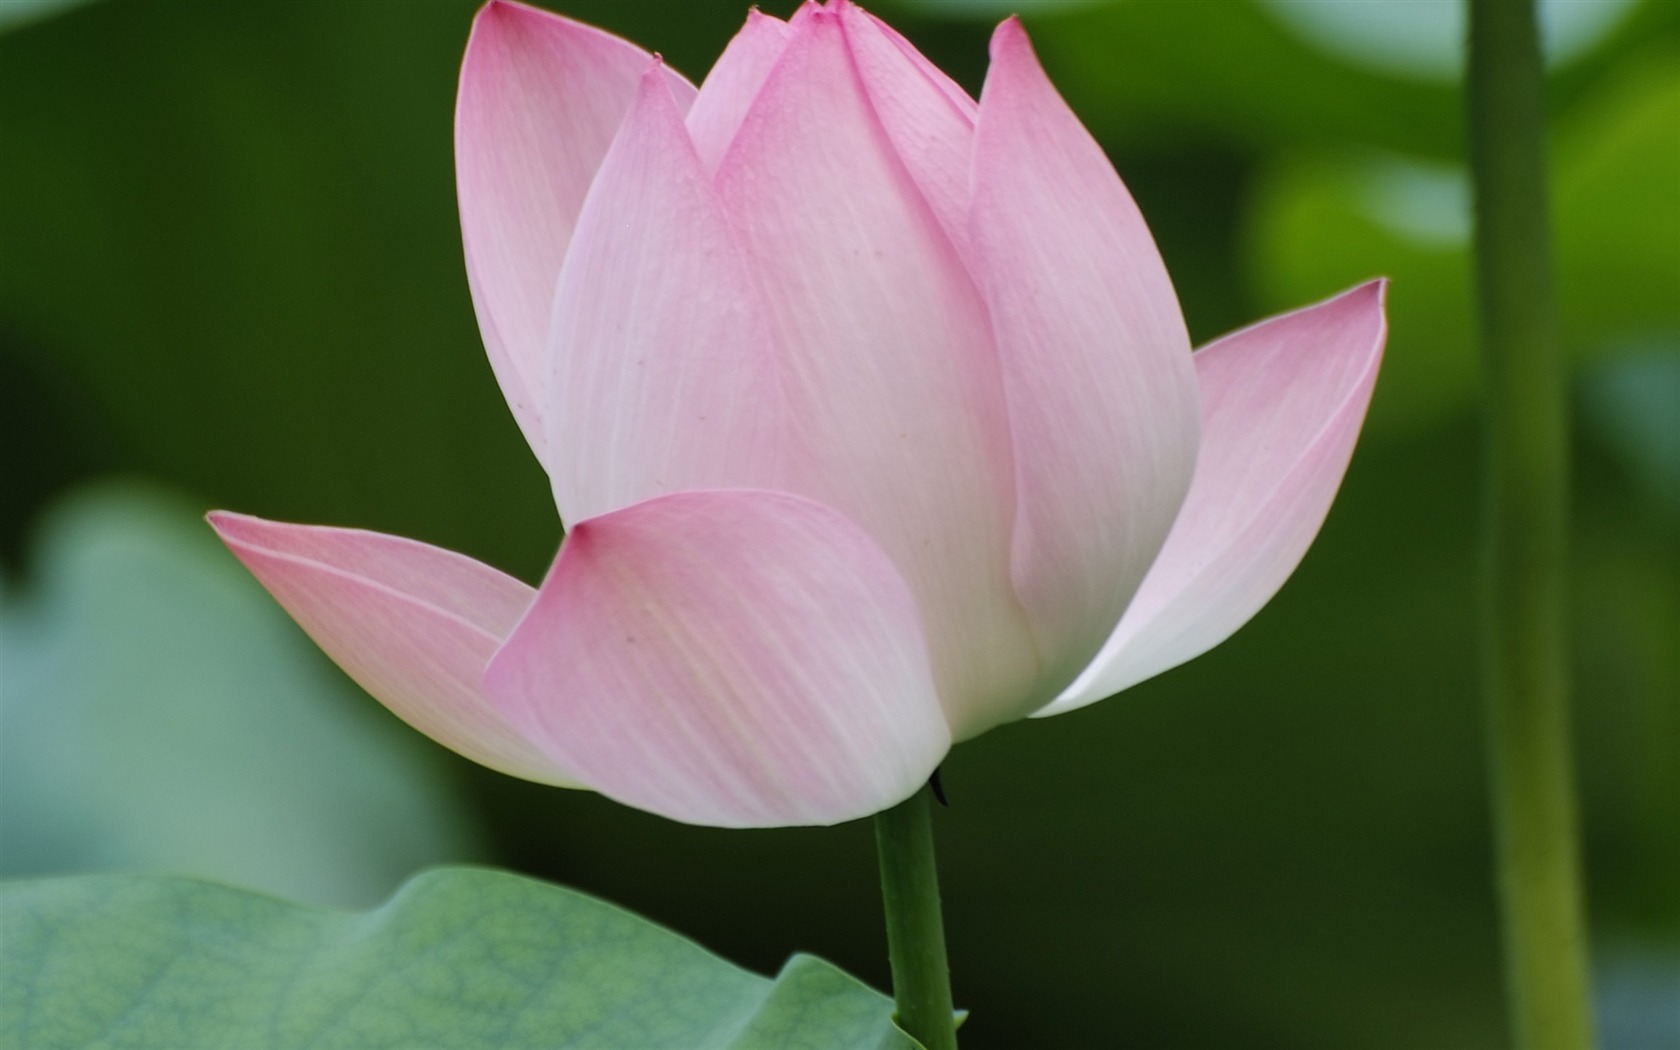 Rose Garden of the Lotus (rebar works) #3 - 1680x1050